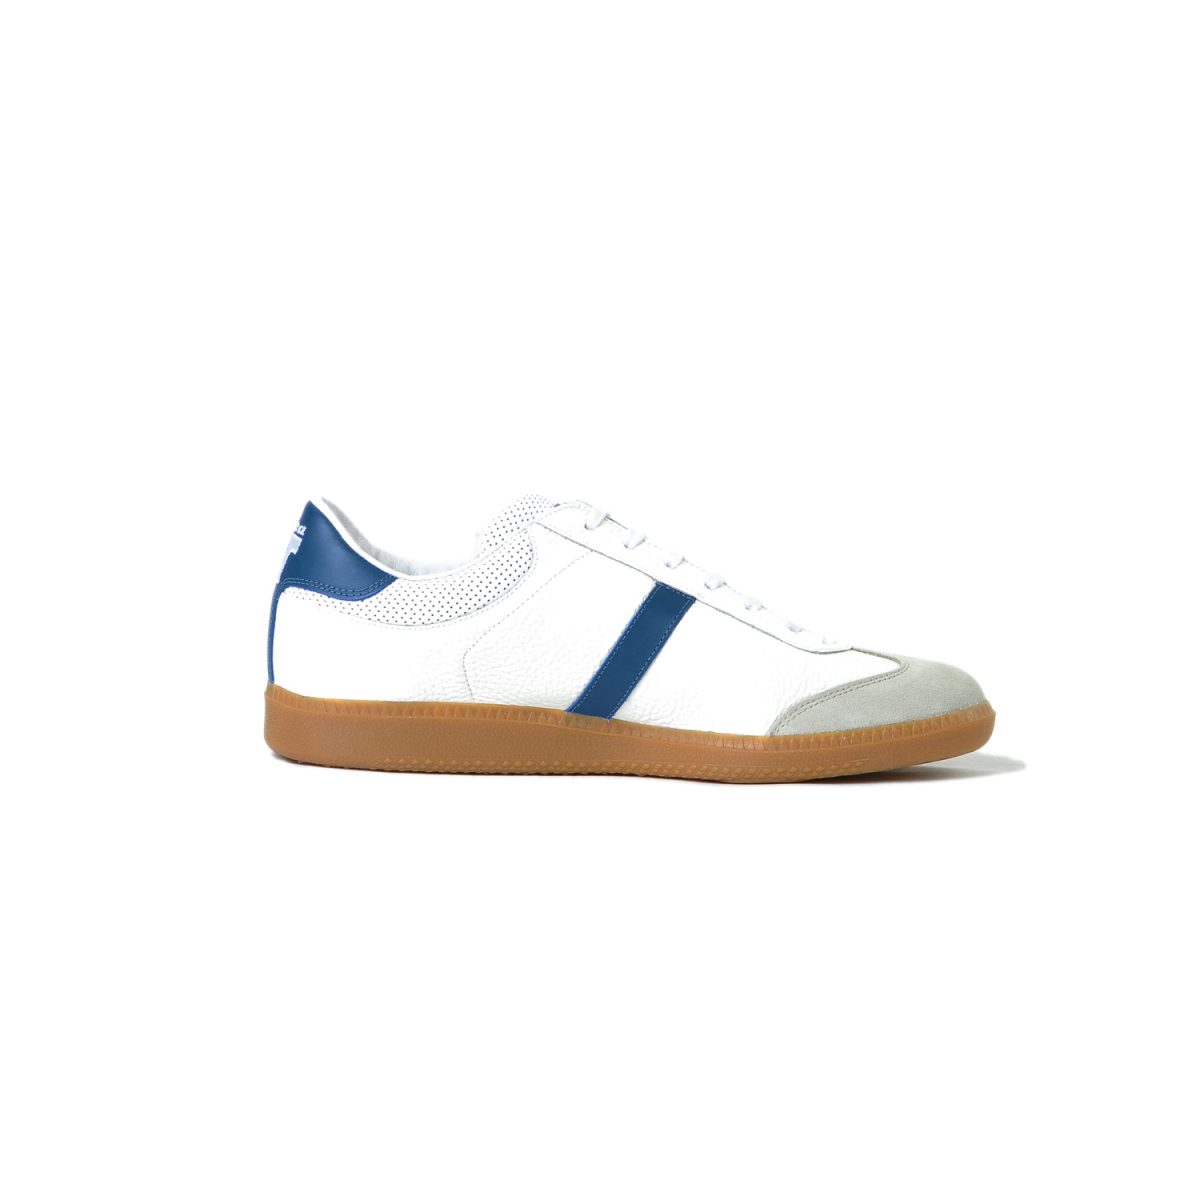 Tisza shoes - Compakt - White-blue